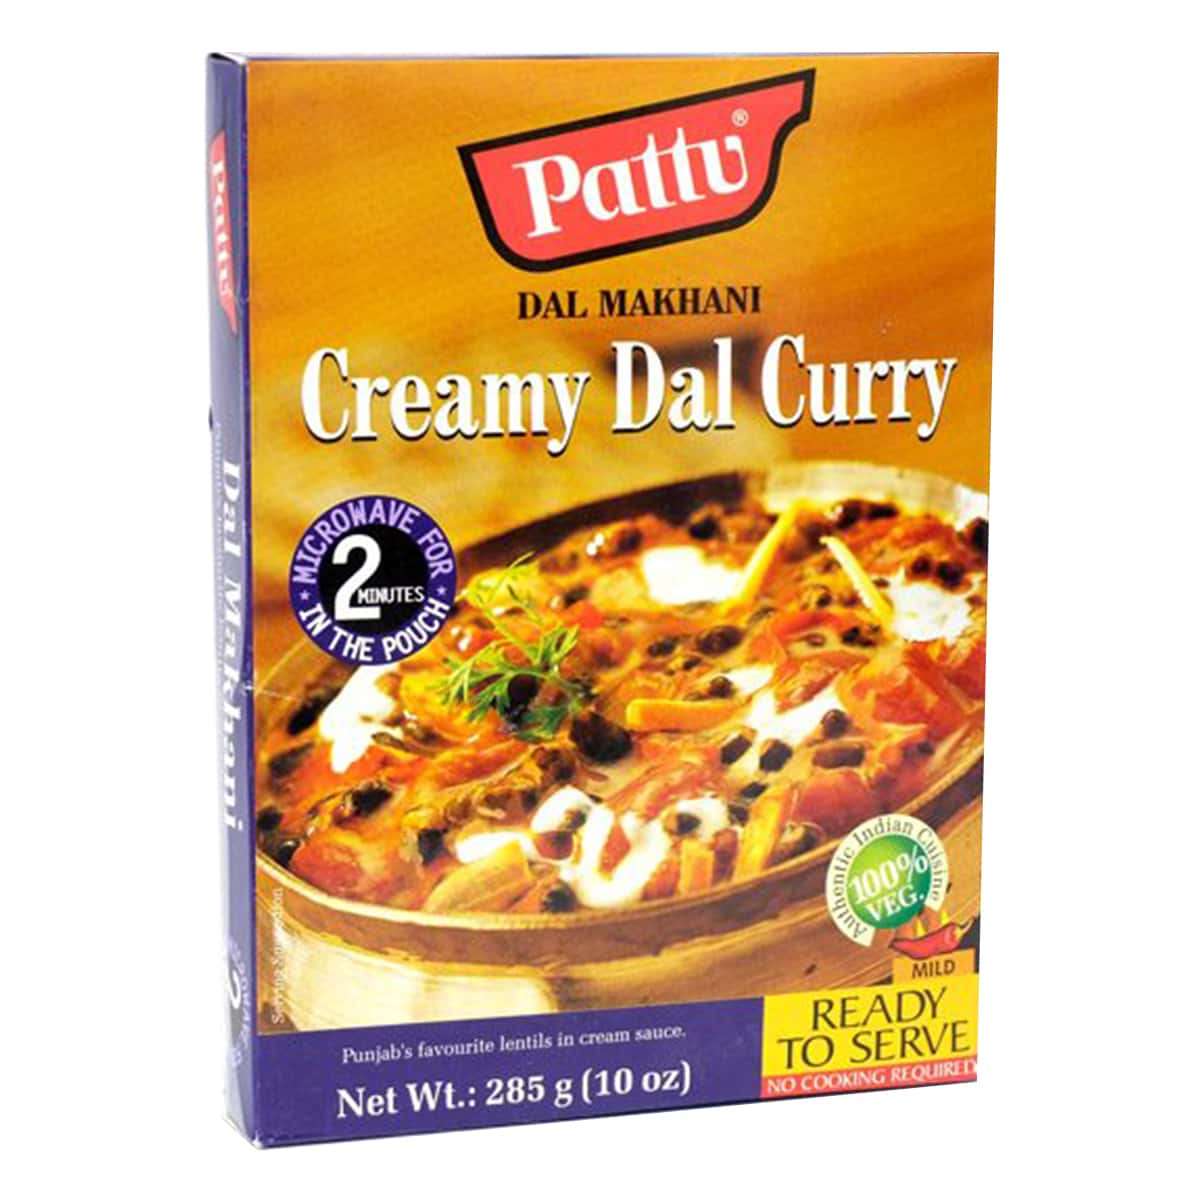 Buy Pattu Dal Makhani (Creamy Dal Curry) Ready to Serve - 285 gm